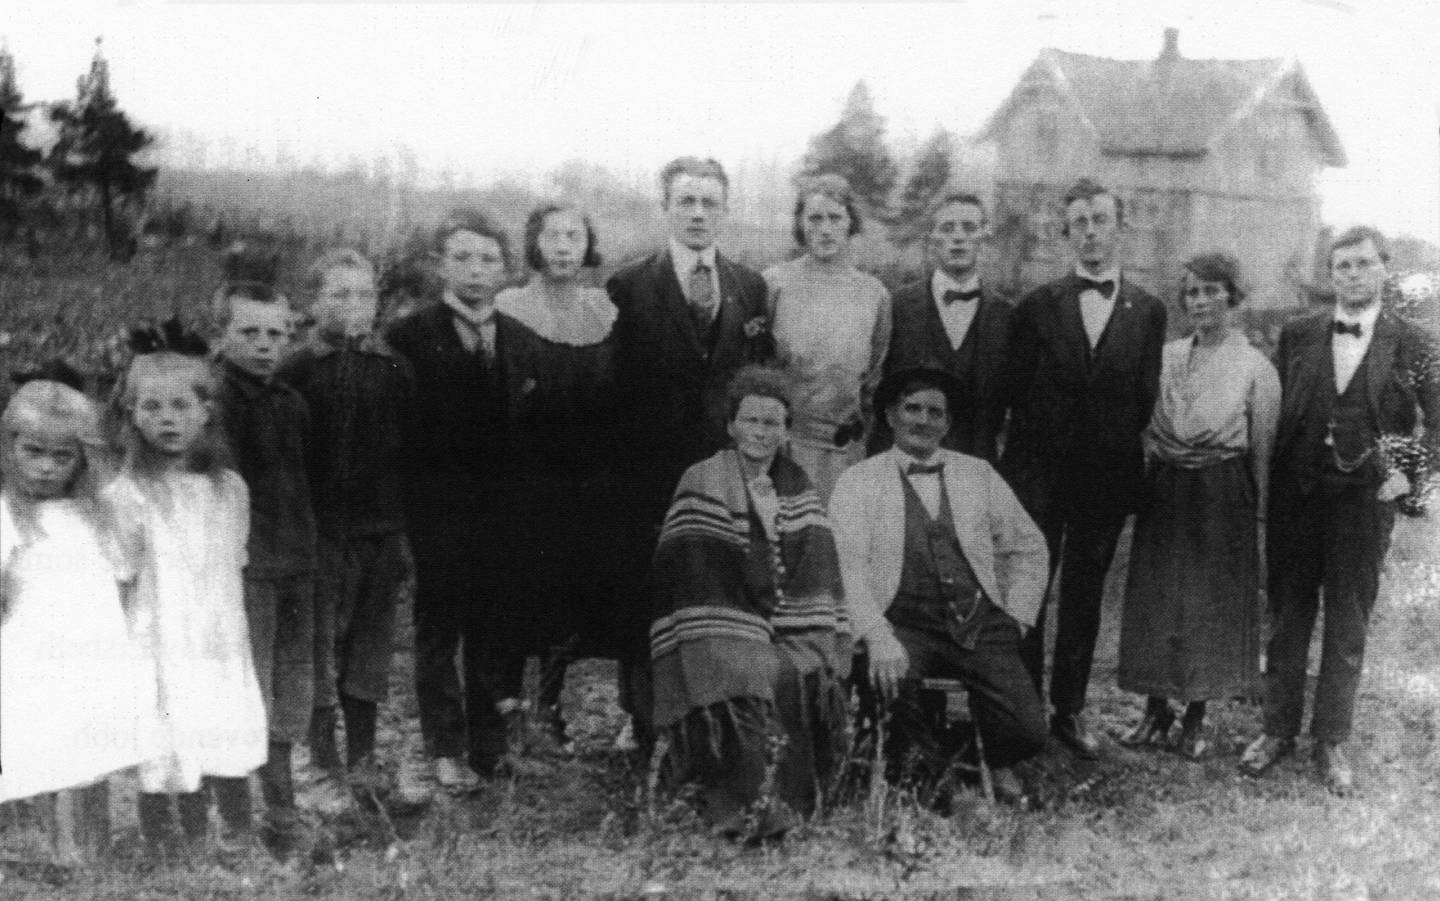 Ekaas var en stor og toneangivende familie på Årum. Her sees Olga og Henrik Ekaas med sin store barneflokk omkring 1920.